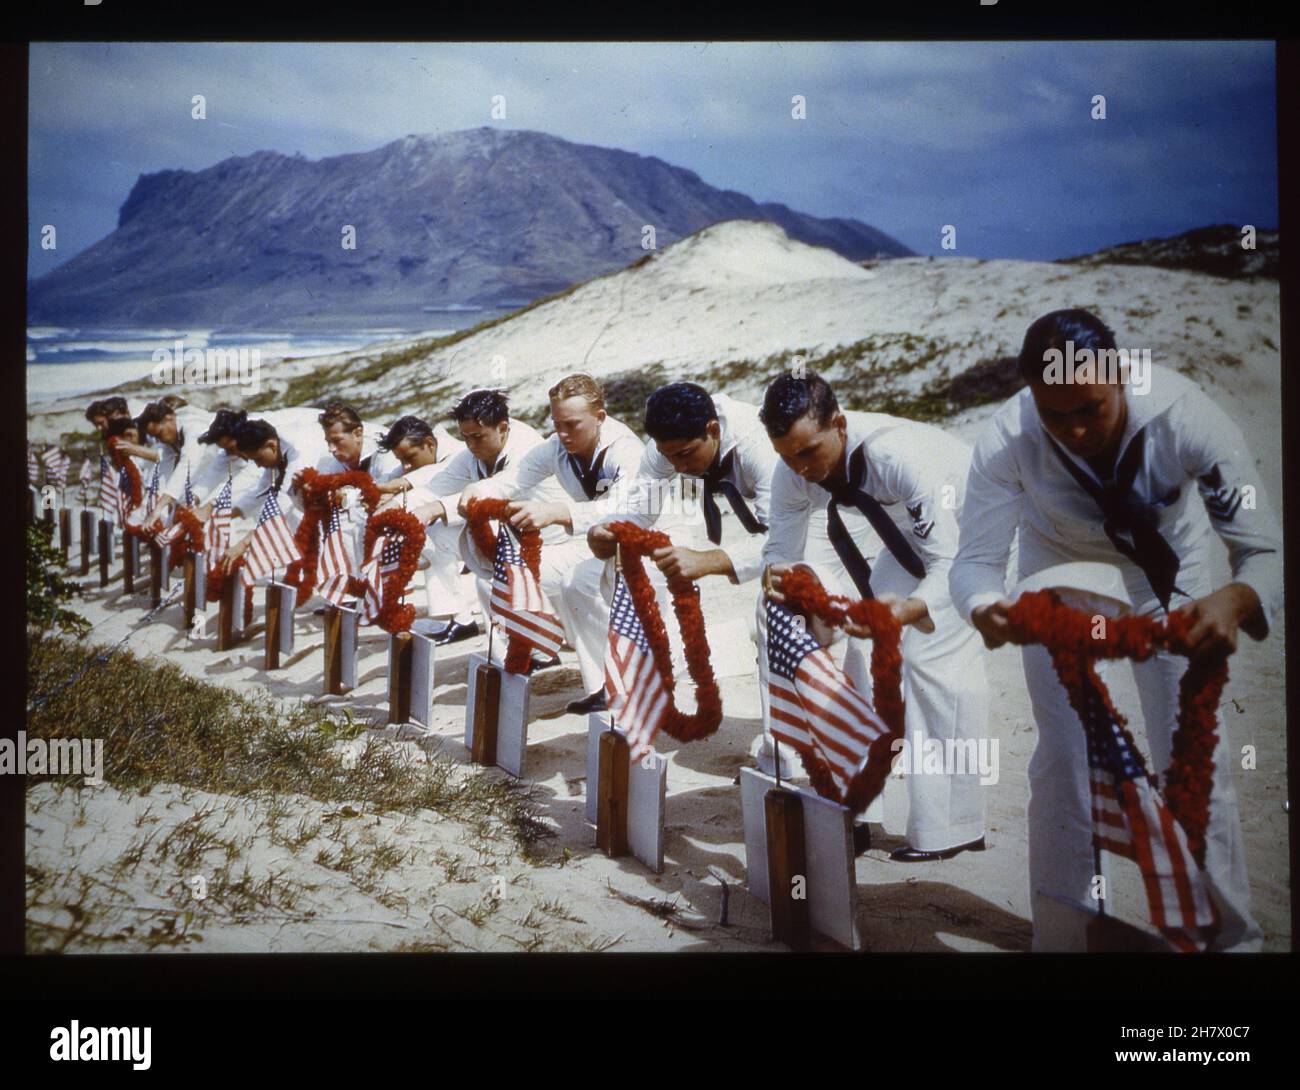 Islas hawaianas, primavera de 1942 -- Título original - 'En la tradición hawaiana, los marineros rinden homenaje a las víctimas del ataque de Pearl Harbor en un cementerio de las islas hawaianas, alrededor de la primavera de 1942. Posiblemente tomado el Día de los Caídos.' Foto de la Armada de los Estados Unidos Foto de stock